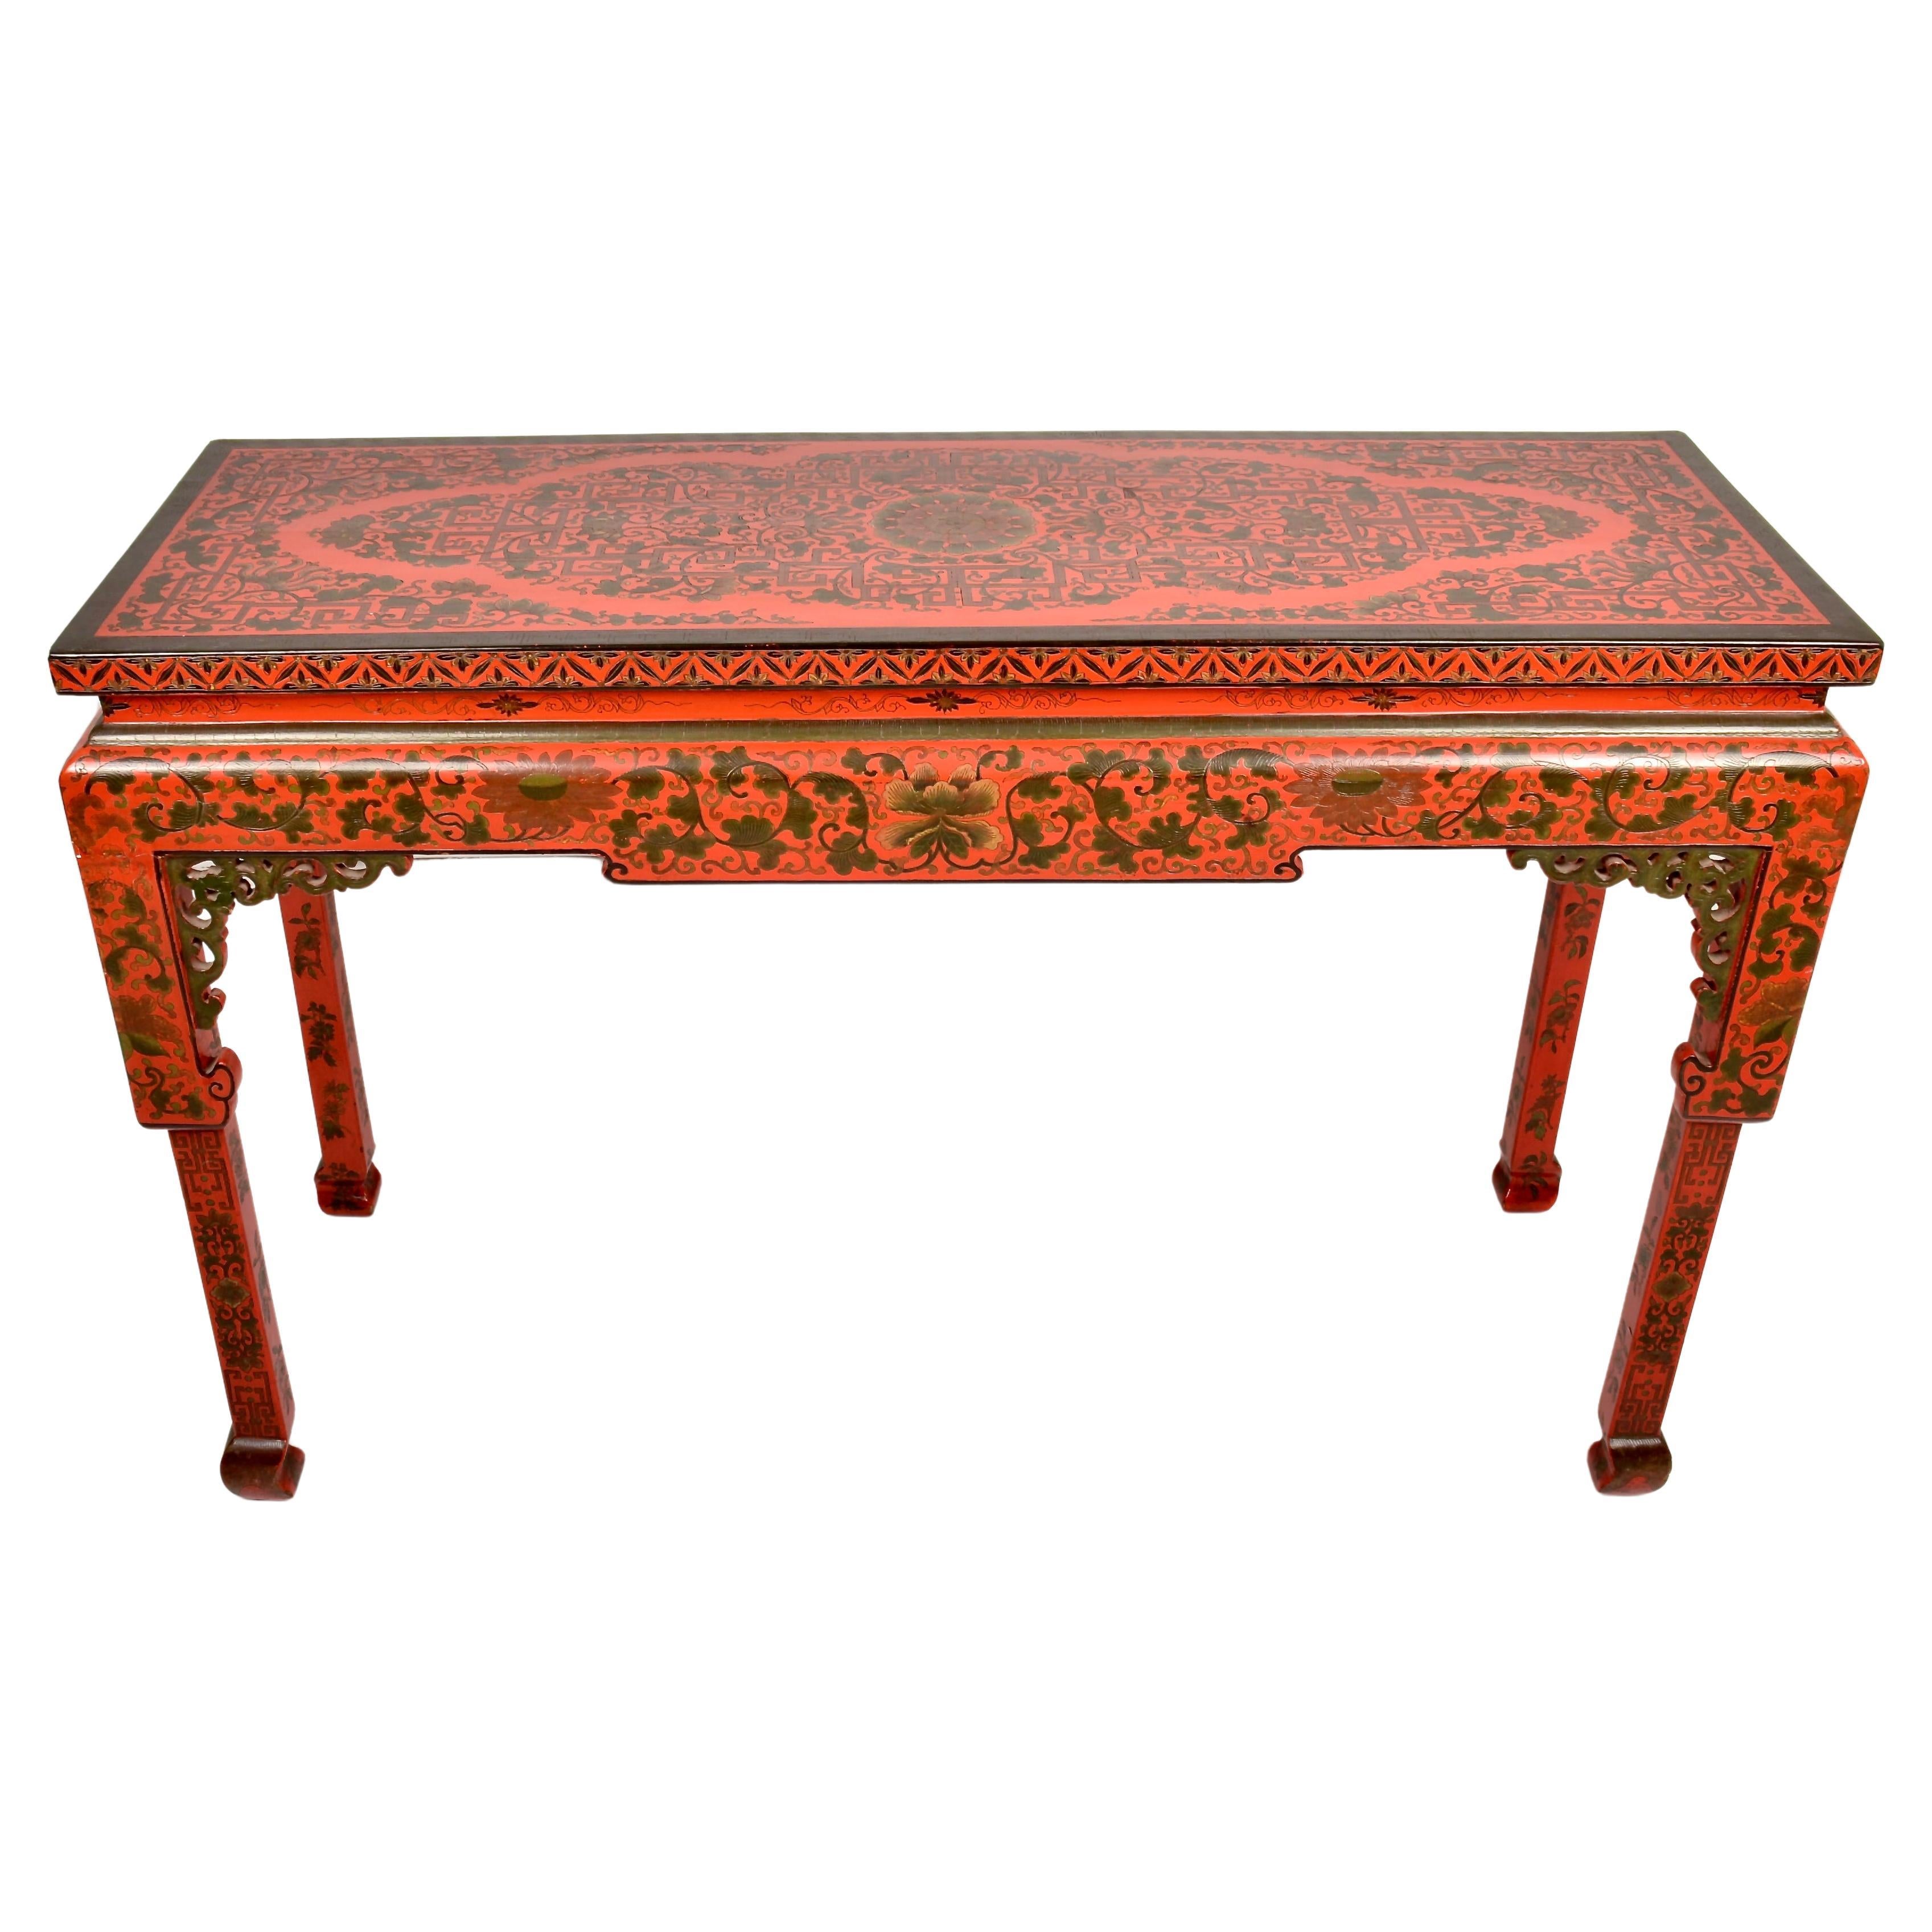 Table console chinoise de style Chippendale avec décoration chinoiseries laquées